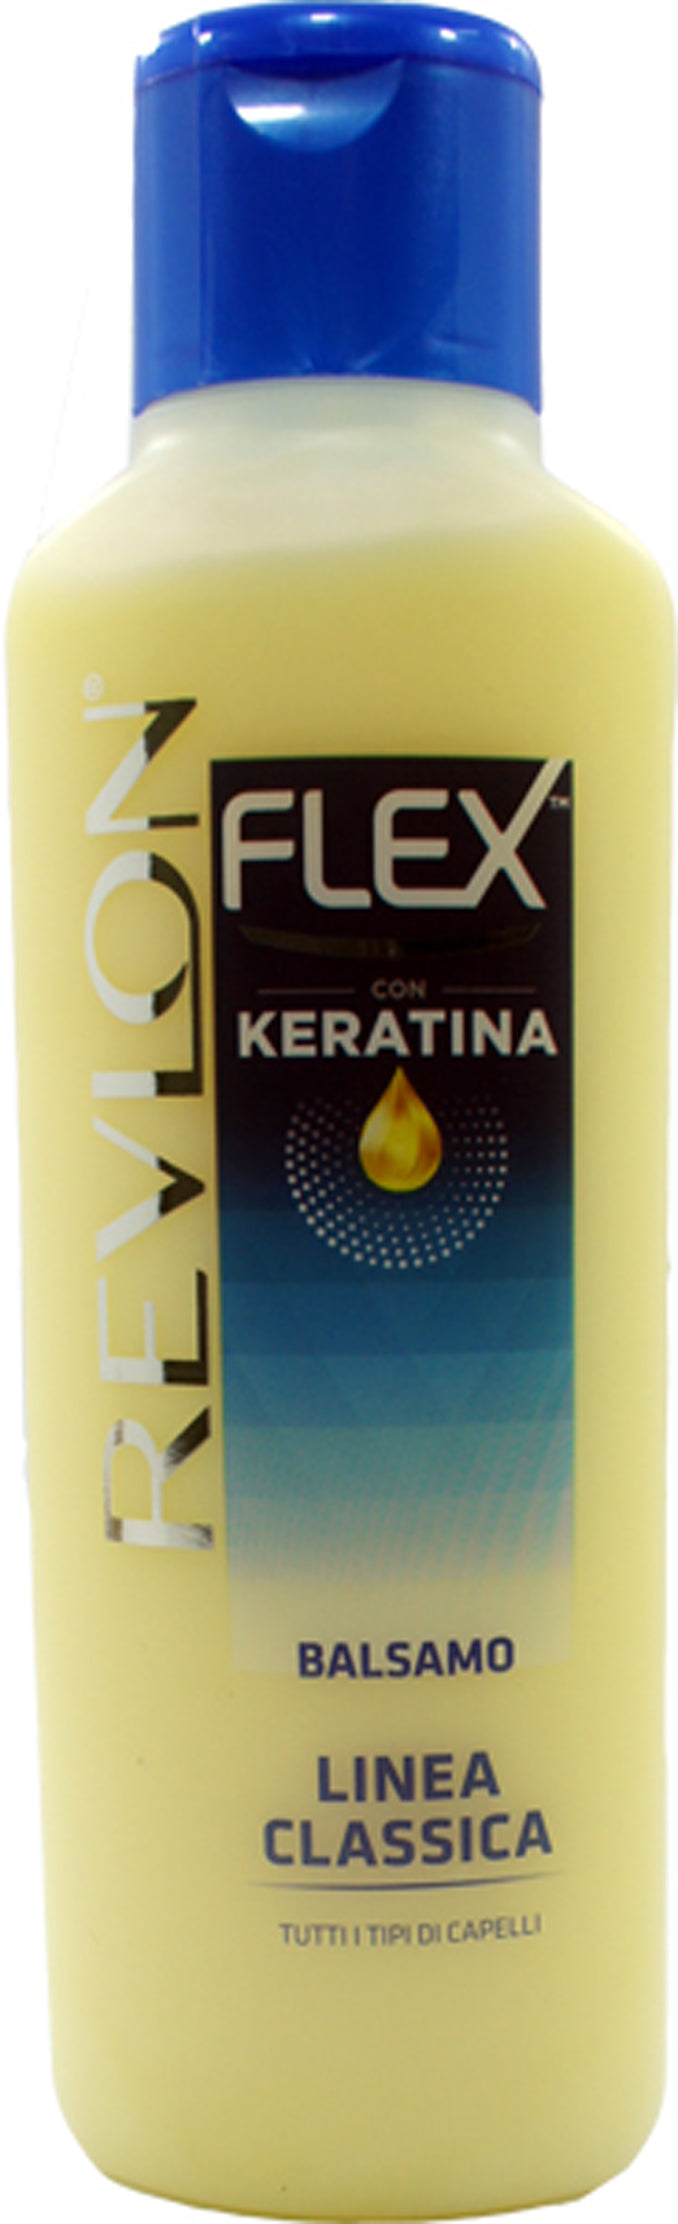 Revlon Flex  Keratina Balsamo Linea Classica - 400 ml - RossoLaccaStore